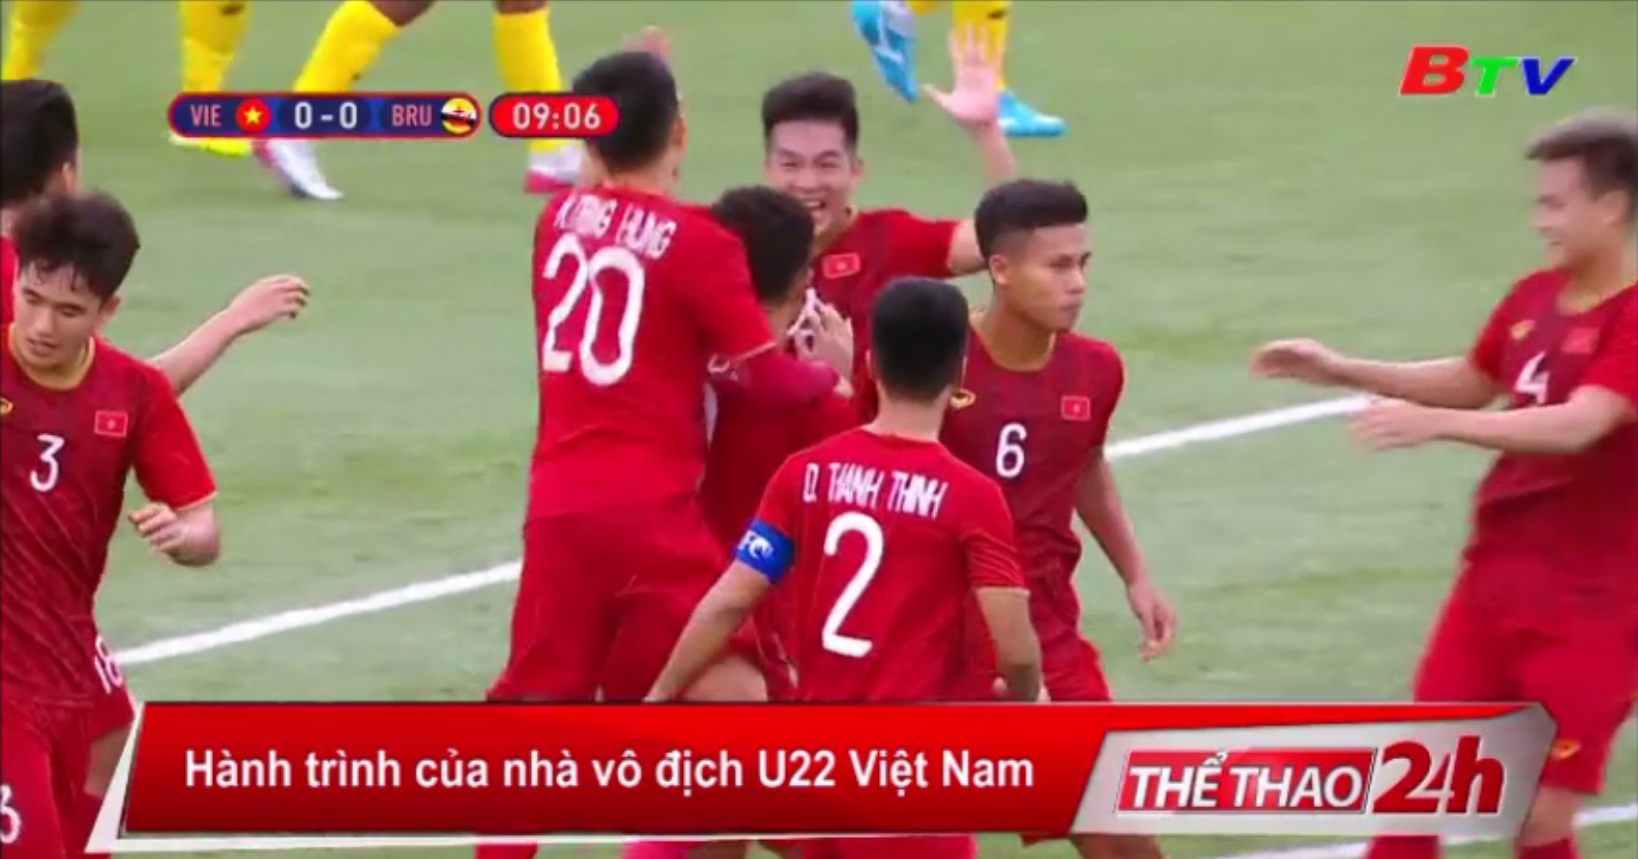 Hành trình của nhà vô địch U22 Việt Nam